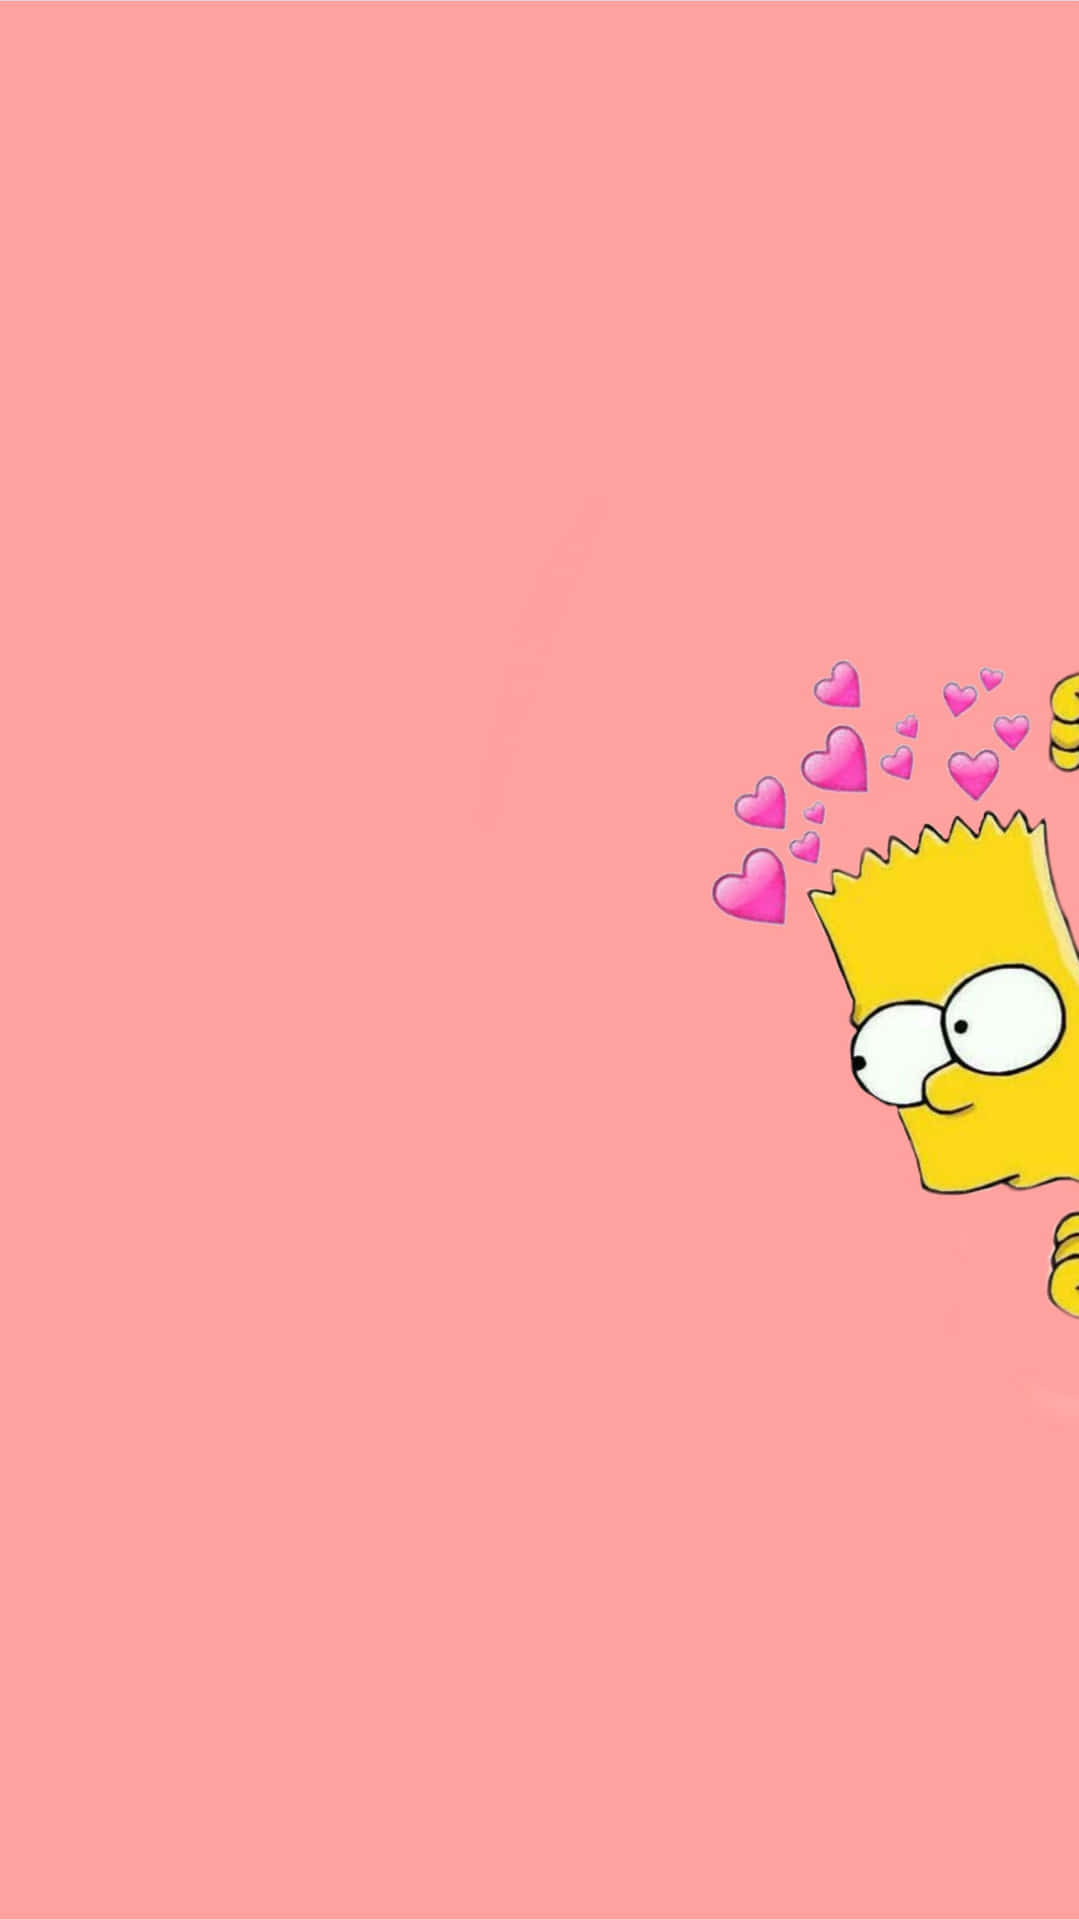 Aggiungiun Po' Di Divertimento Alla Tua Casa Con L'iconico Personaggio Di Saturday Night Live, Bart Simpson. Sfondo